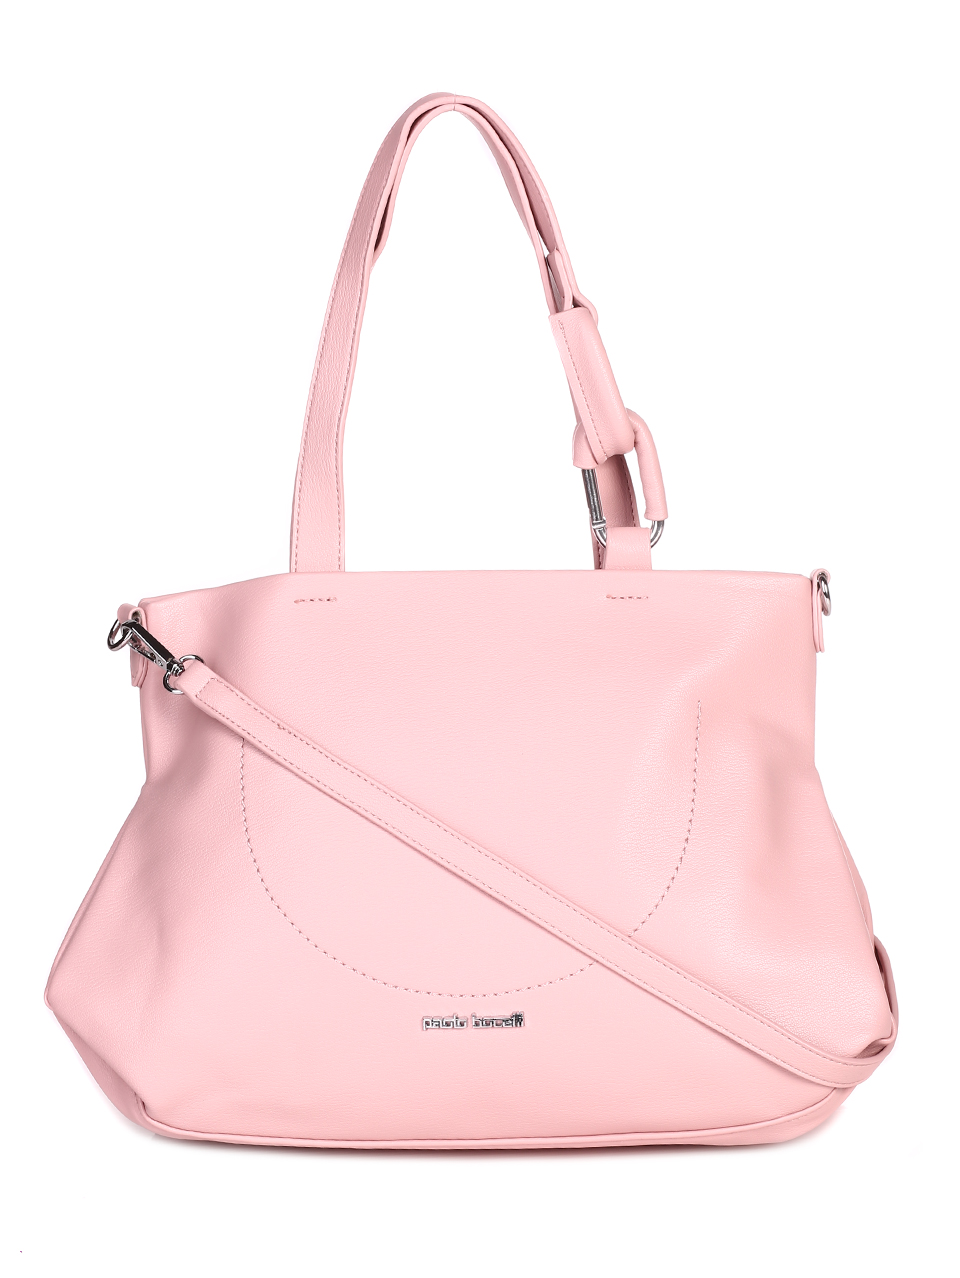 Ежедневна дамска голяма чанта в розово 9Q-23076 pink